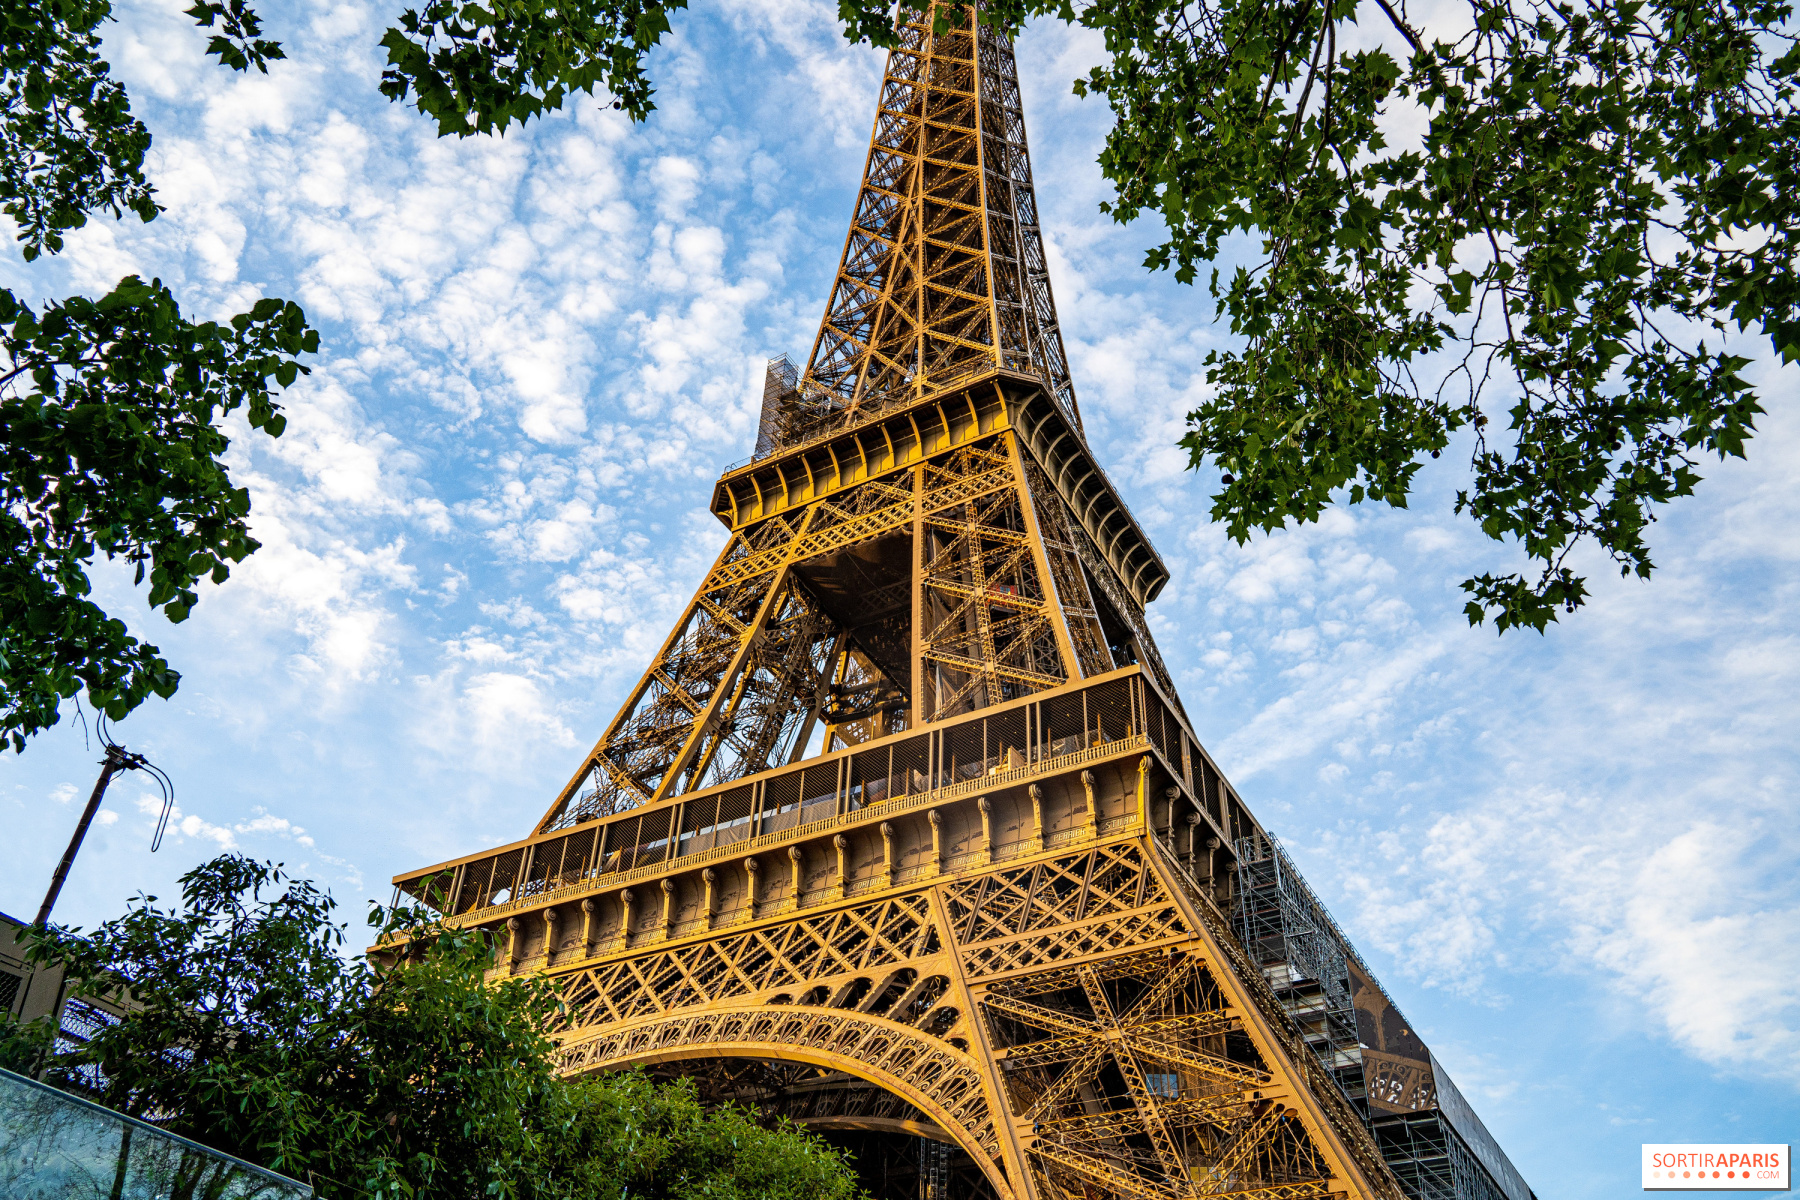 Que faire près de la Tour Eiffel : les expositions à voir dans le coin 